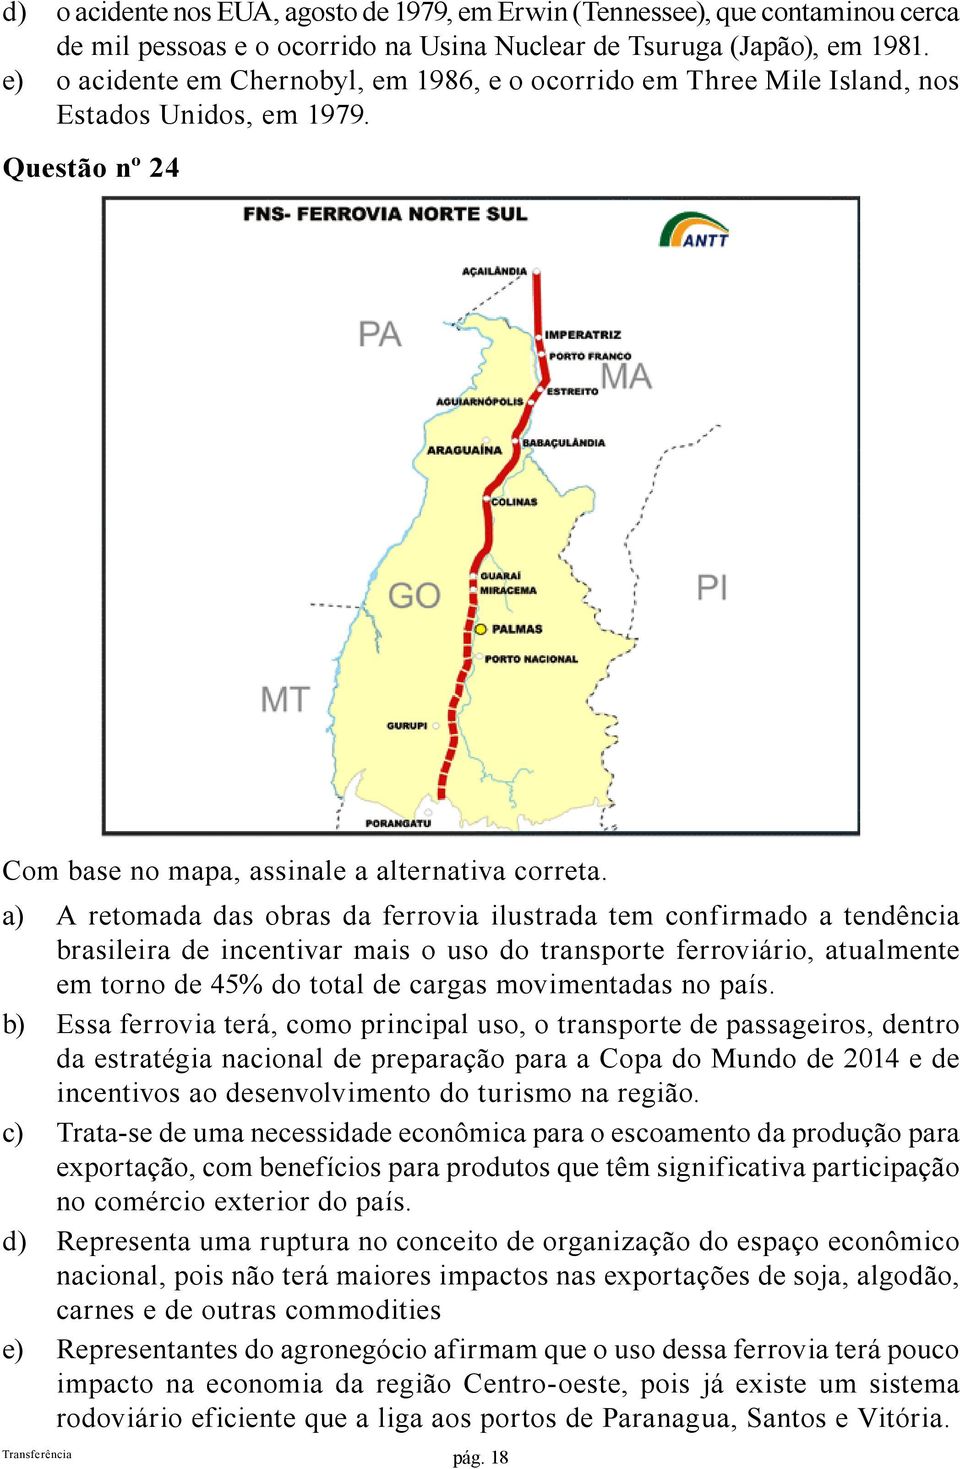 a) A retomada das obras da ferrovia ilustrada tem confirmado a tendência brasileira de incentivar mais o uso do transporte ferroviário, atualmente em torno de 45% do total de cargas movimentadas no